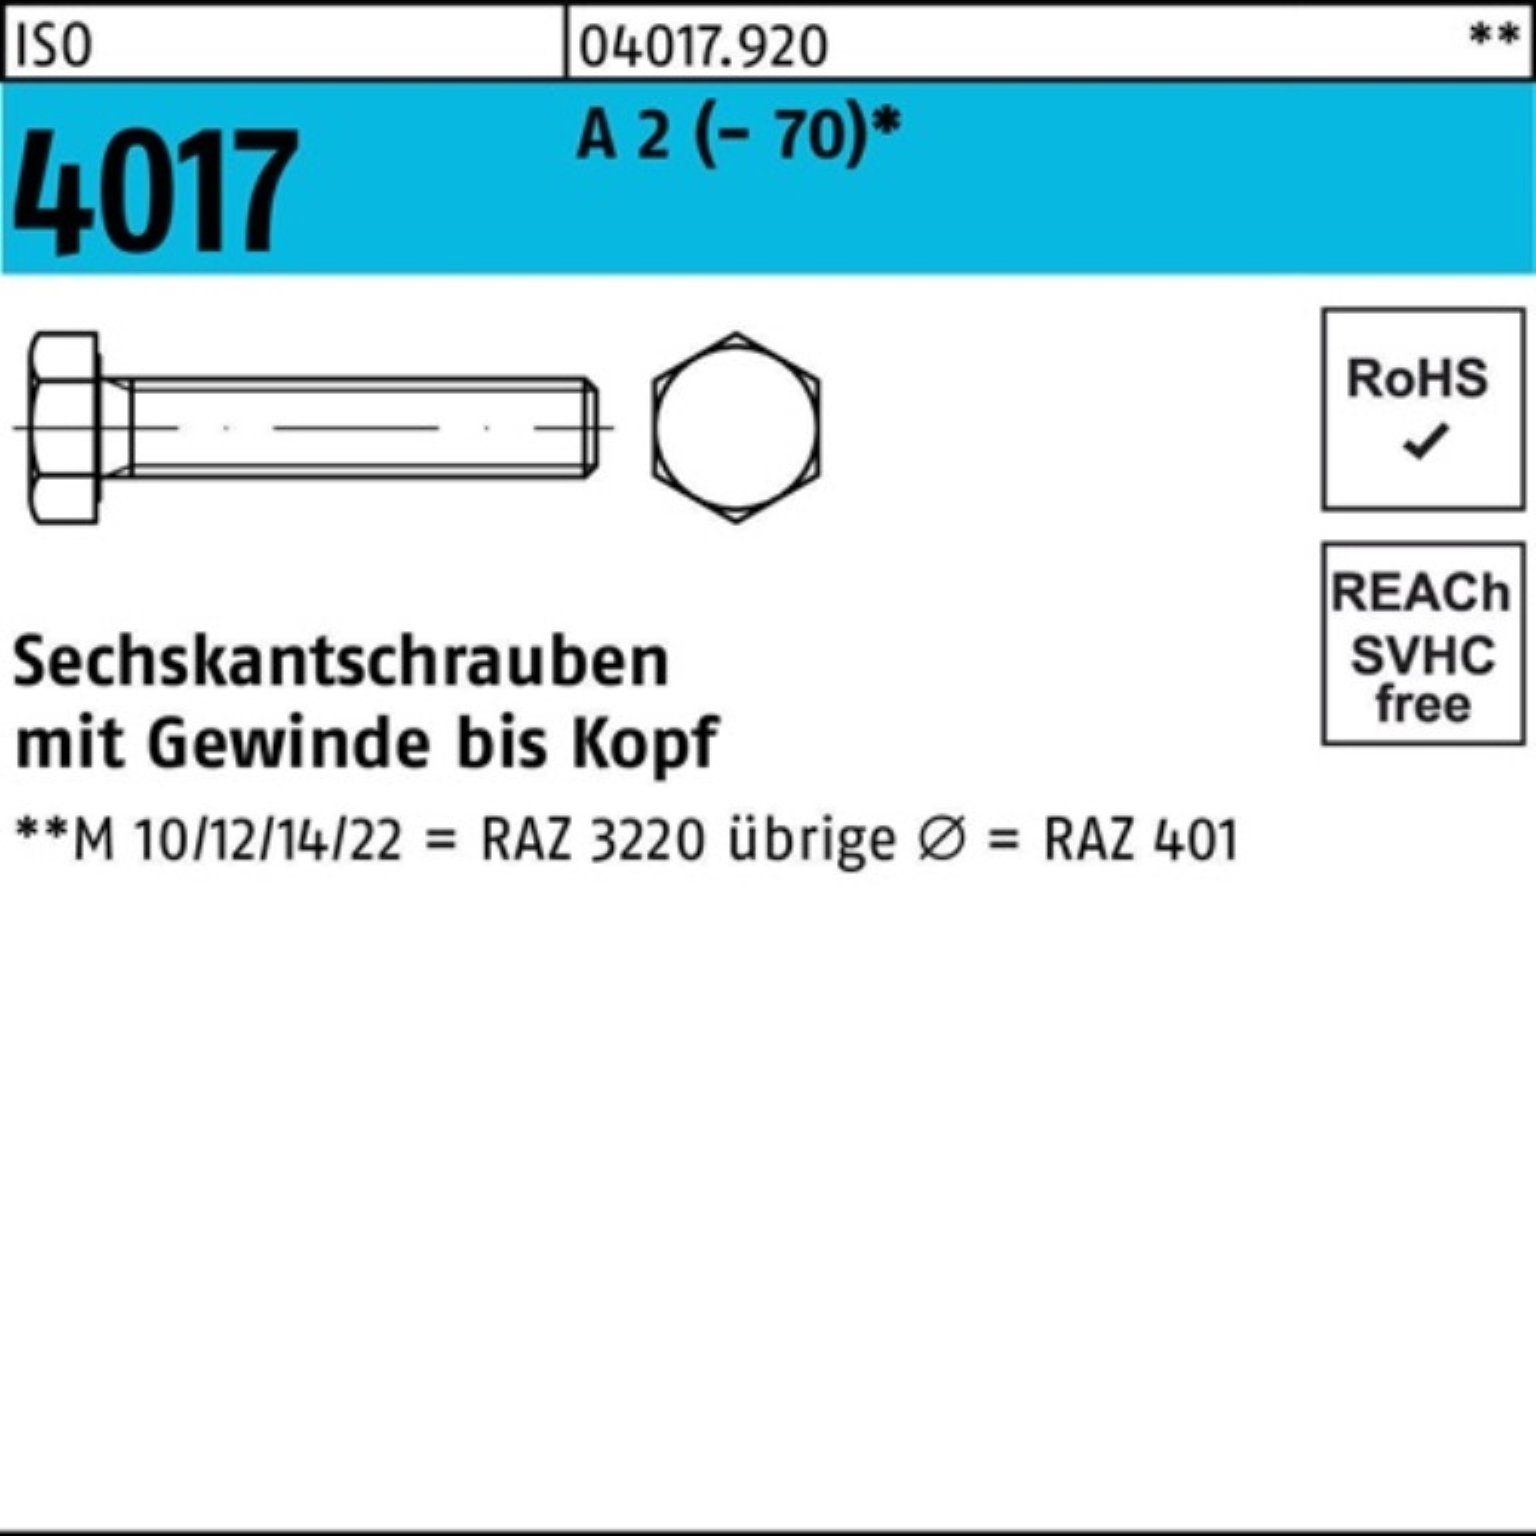 Bufab Sechskantschraube 100er Pack Sechskantschraube ISO 4017 VG M14x 35 A 2 (70) 50 Stück